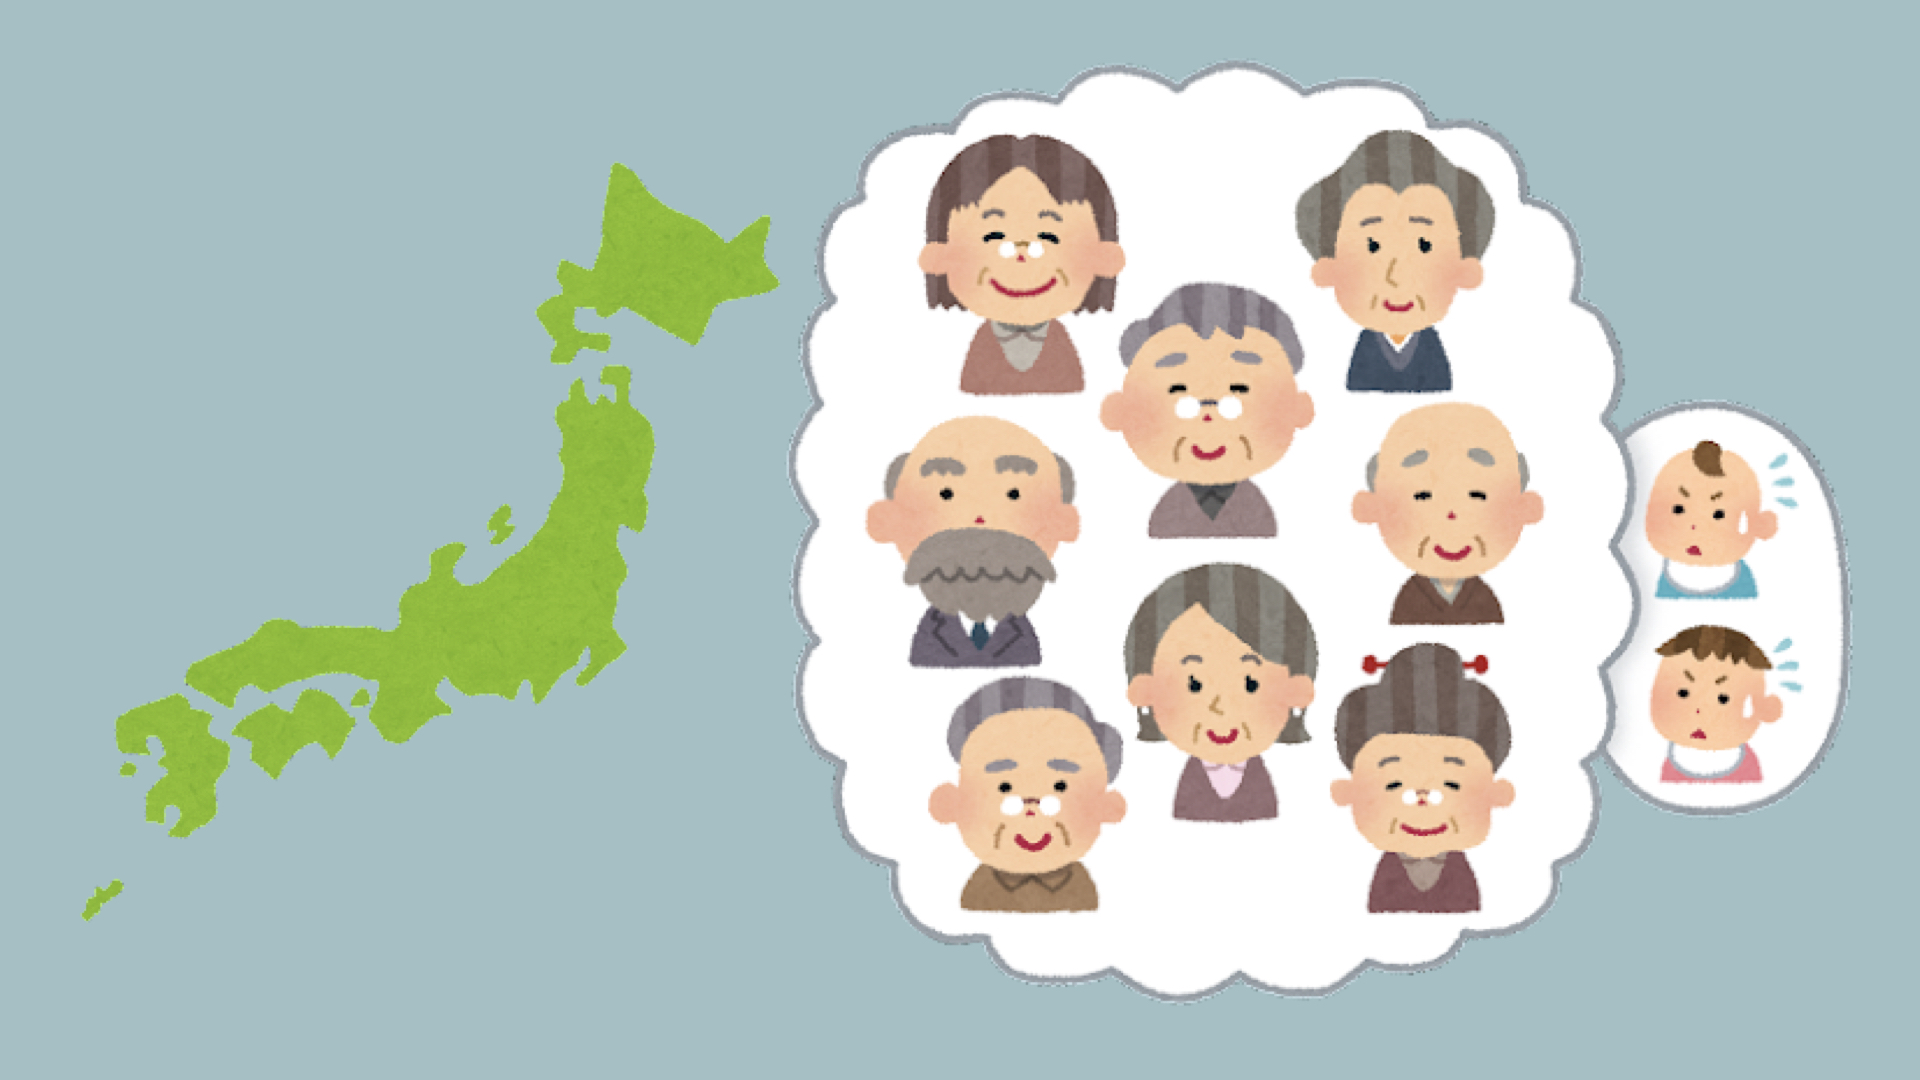 Japan heute: Viele ältere Menschen, wenig Kinder.